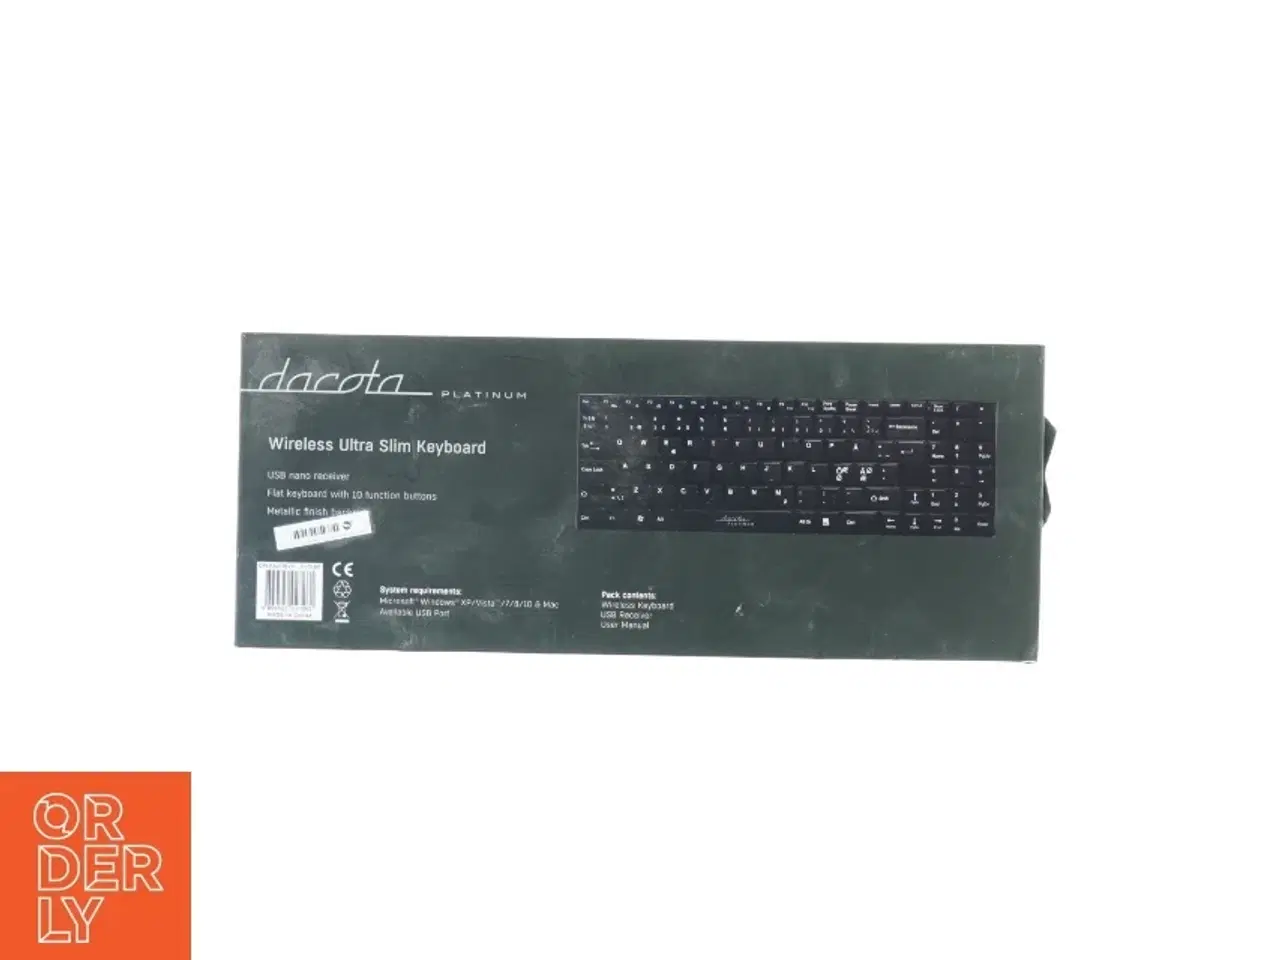 Billede 2 - Trådløst tastatur fra Dacota (str. 37 x 15 cm)